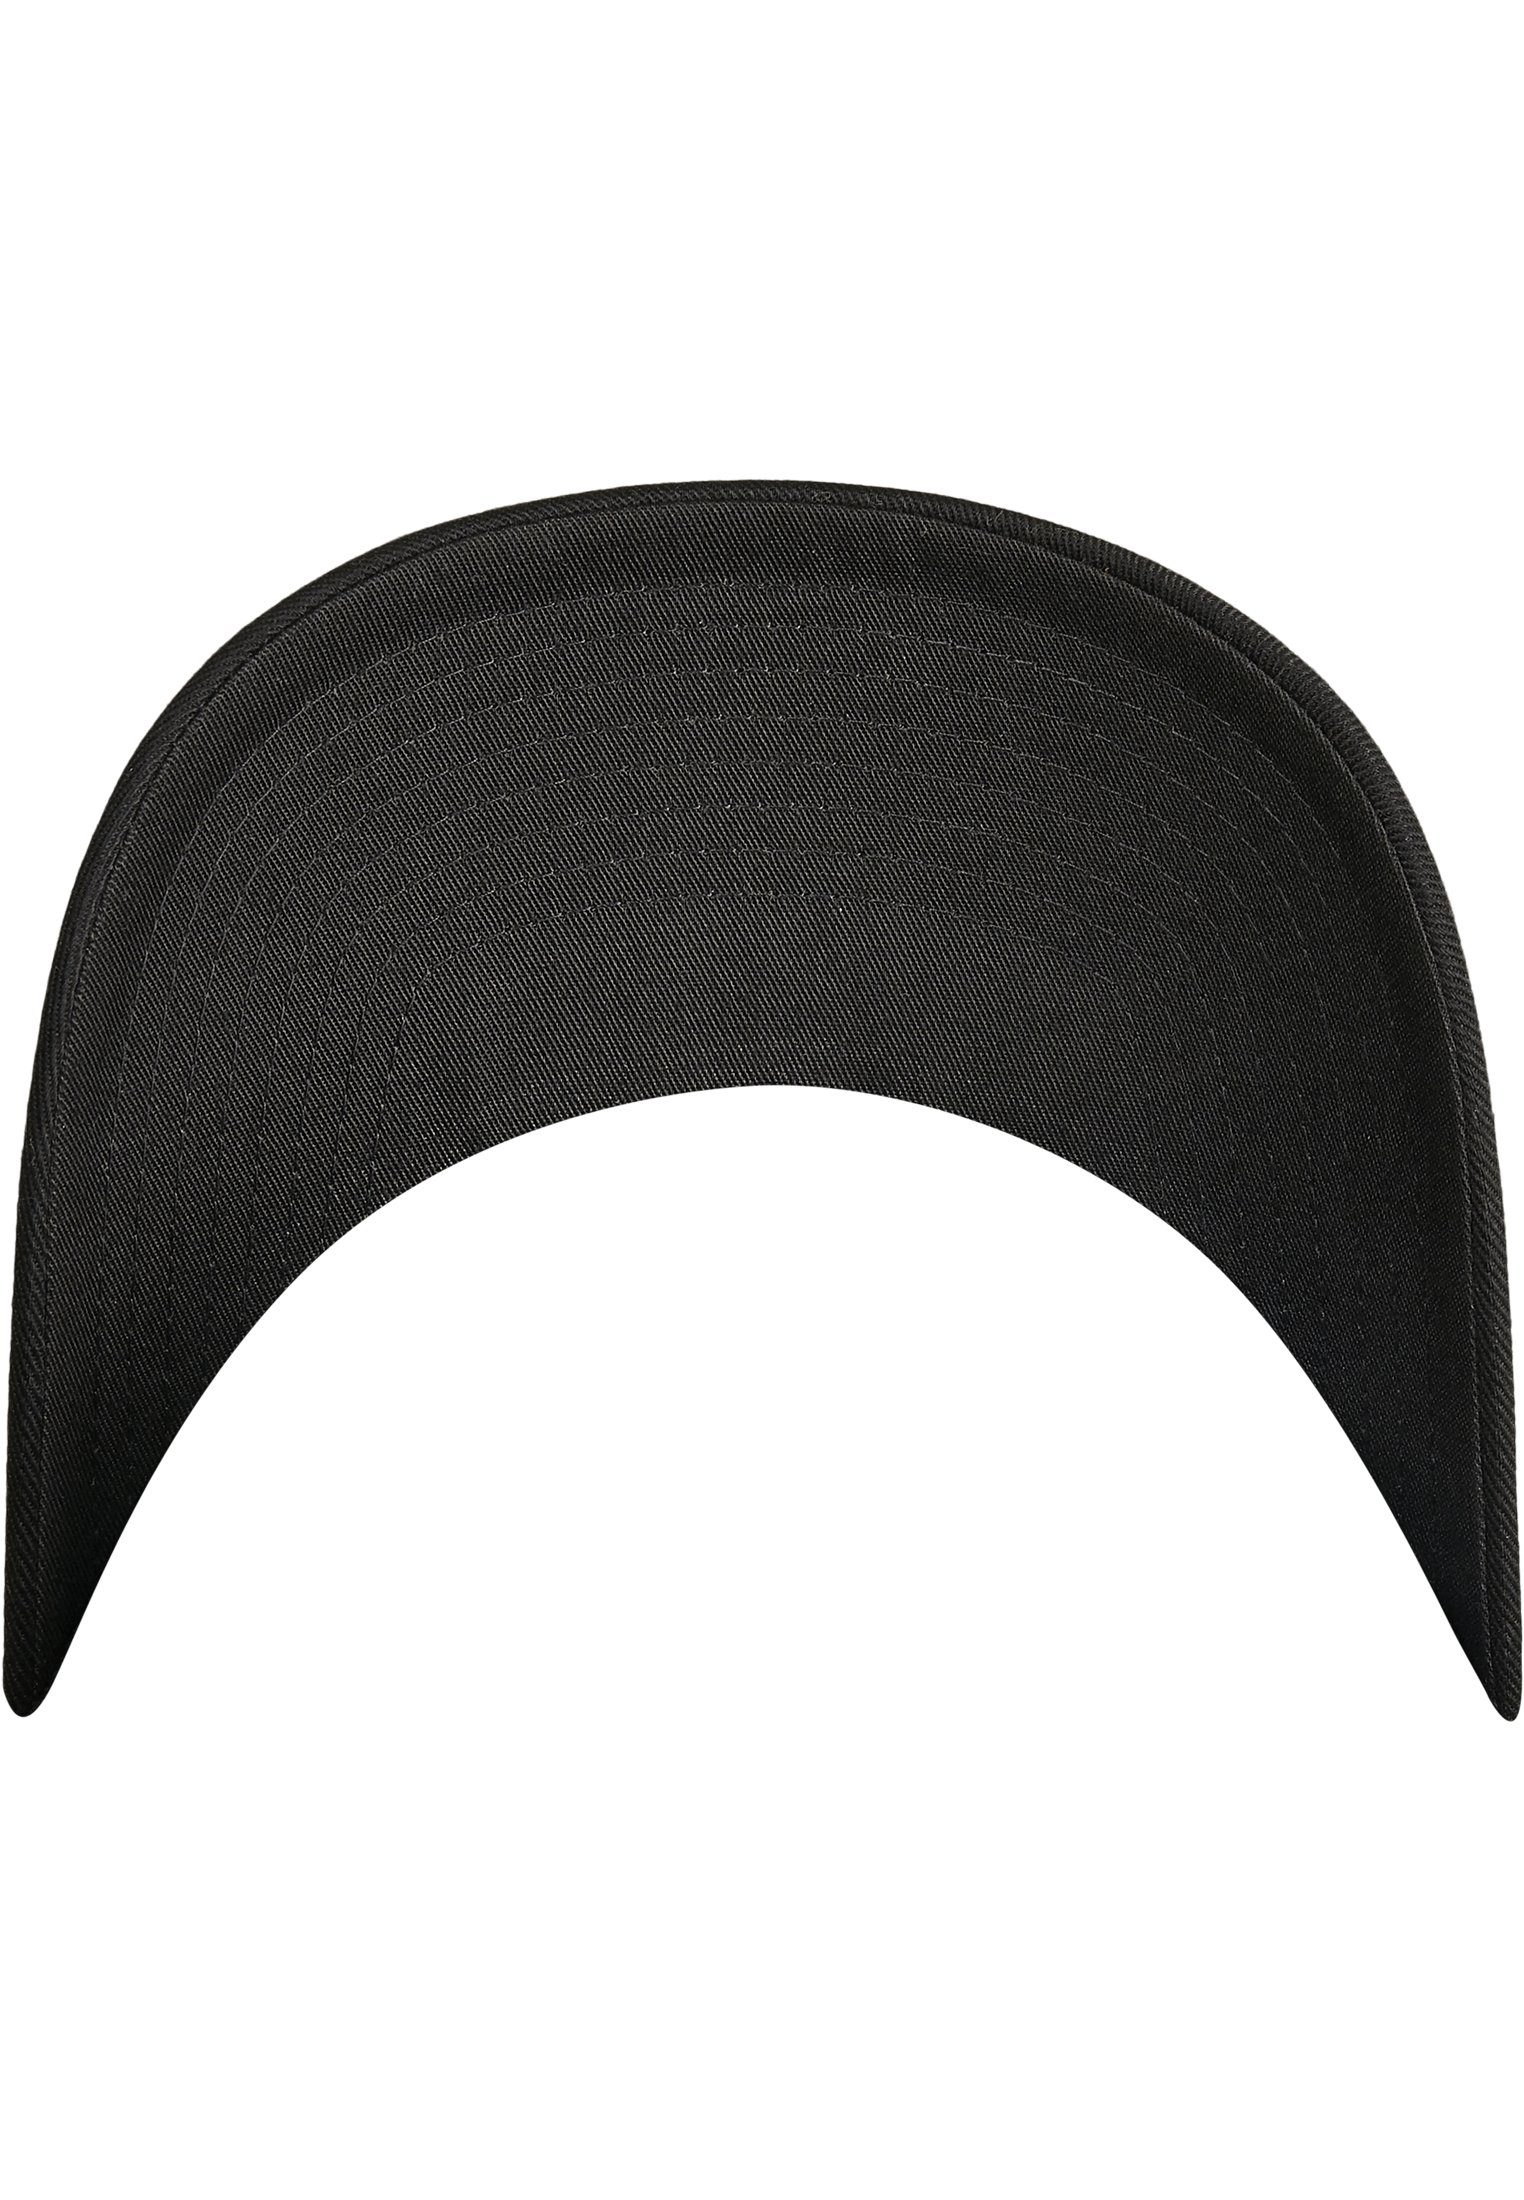 Flexfit Accessoires black/black Flex Cap Combed Wooly Flexfit Adjustable